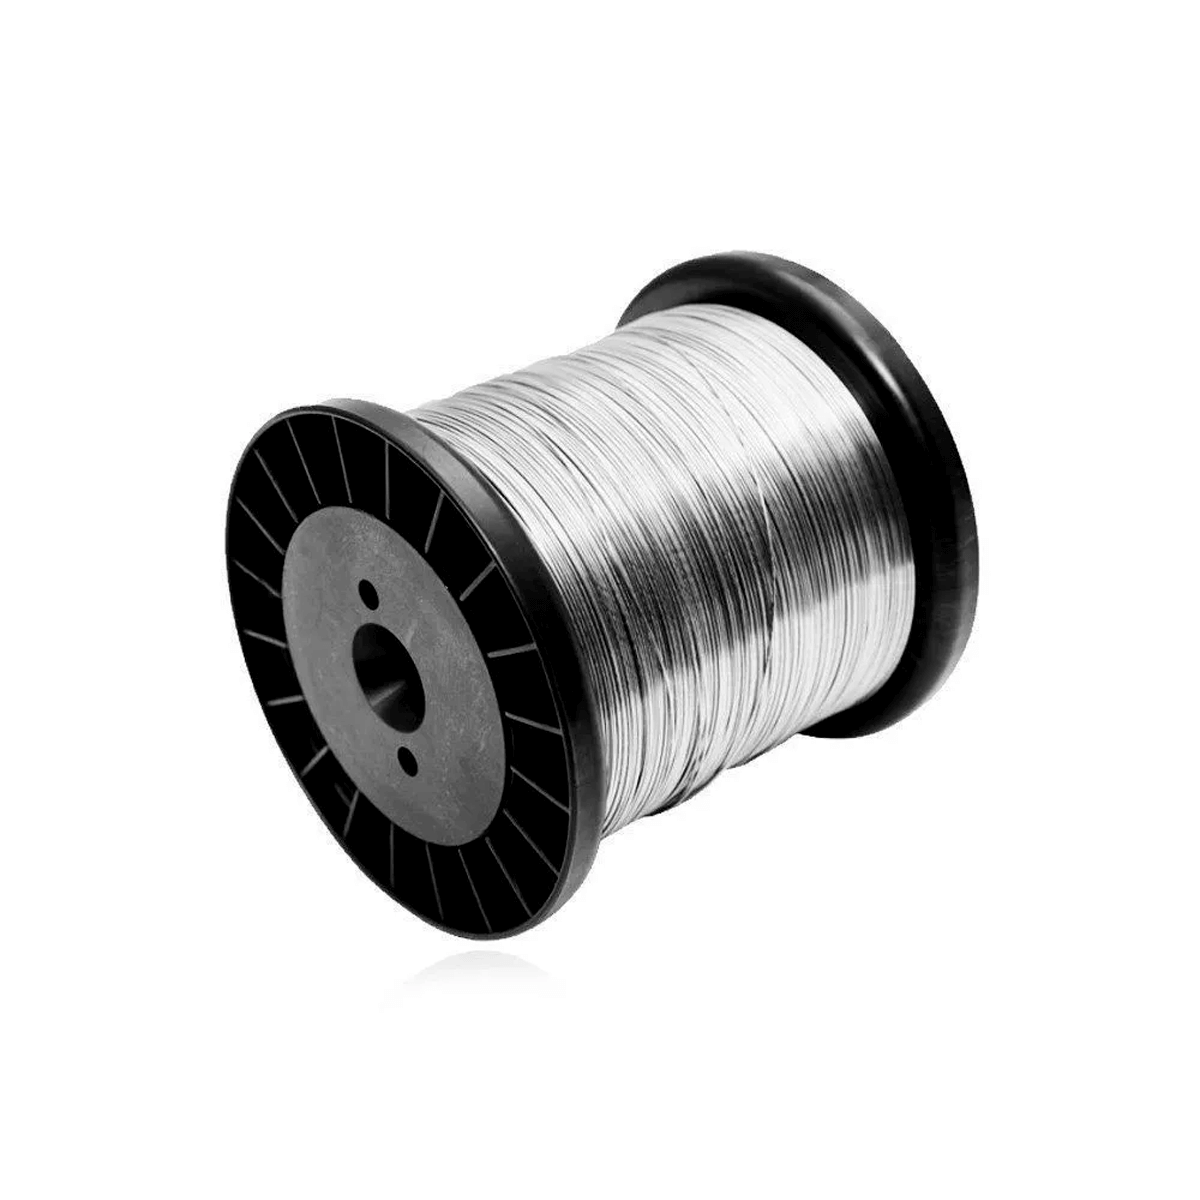 Fio de Aço Inox 0,60 mm para Cerca Elétrica Carretel 455g